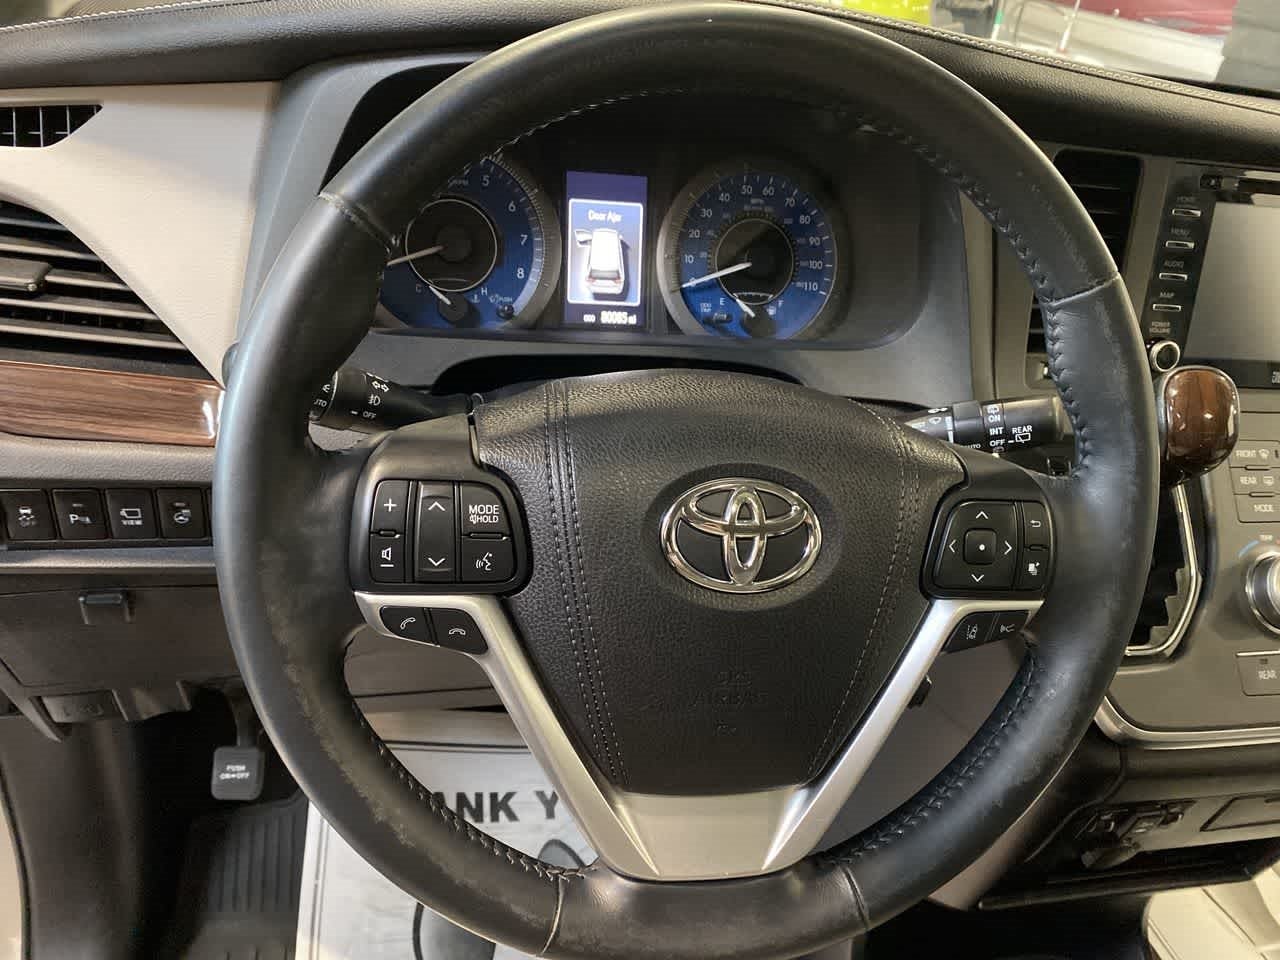 2018 Toyota Sienna Limited Premium